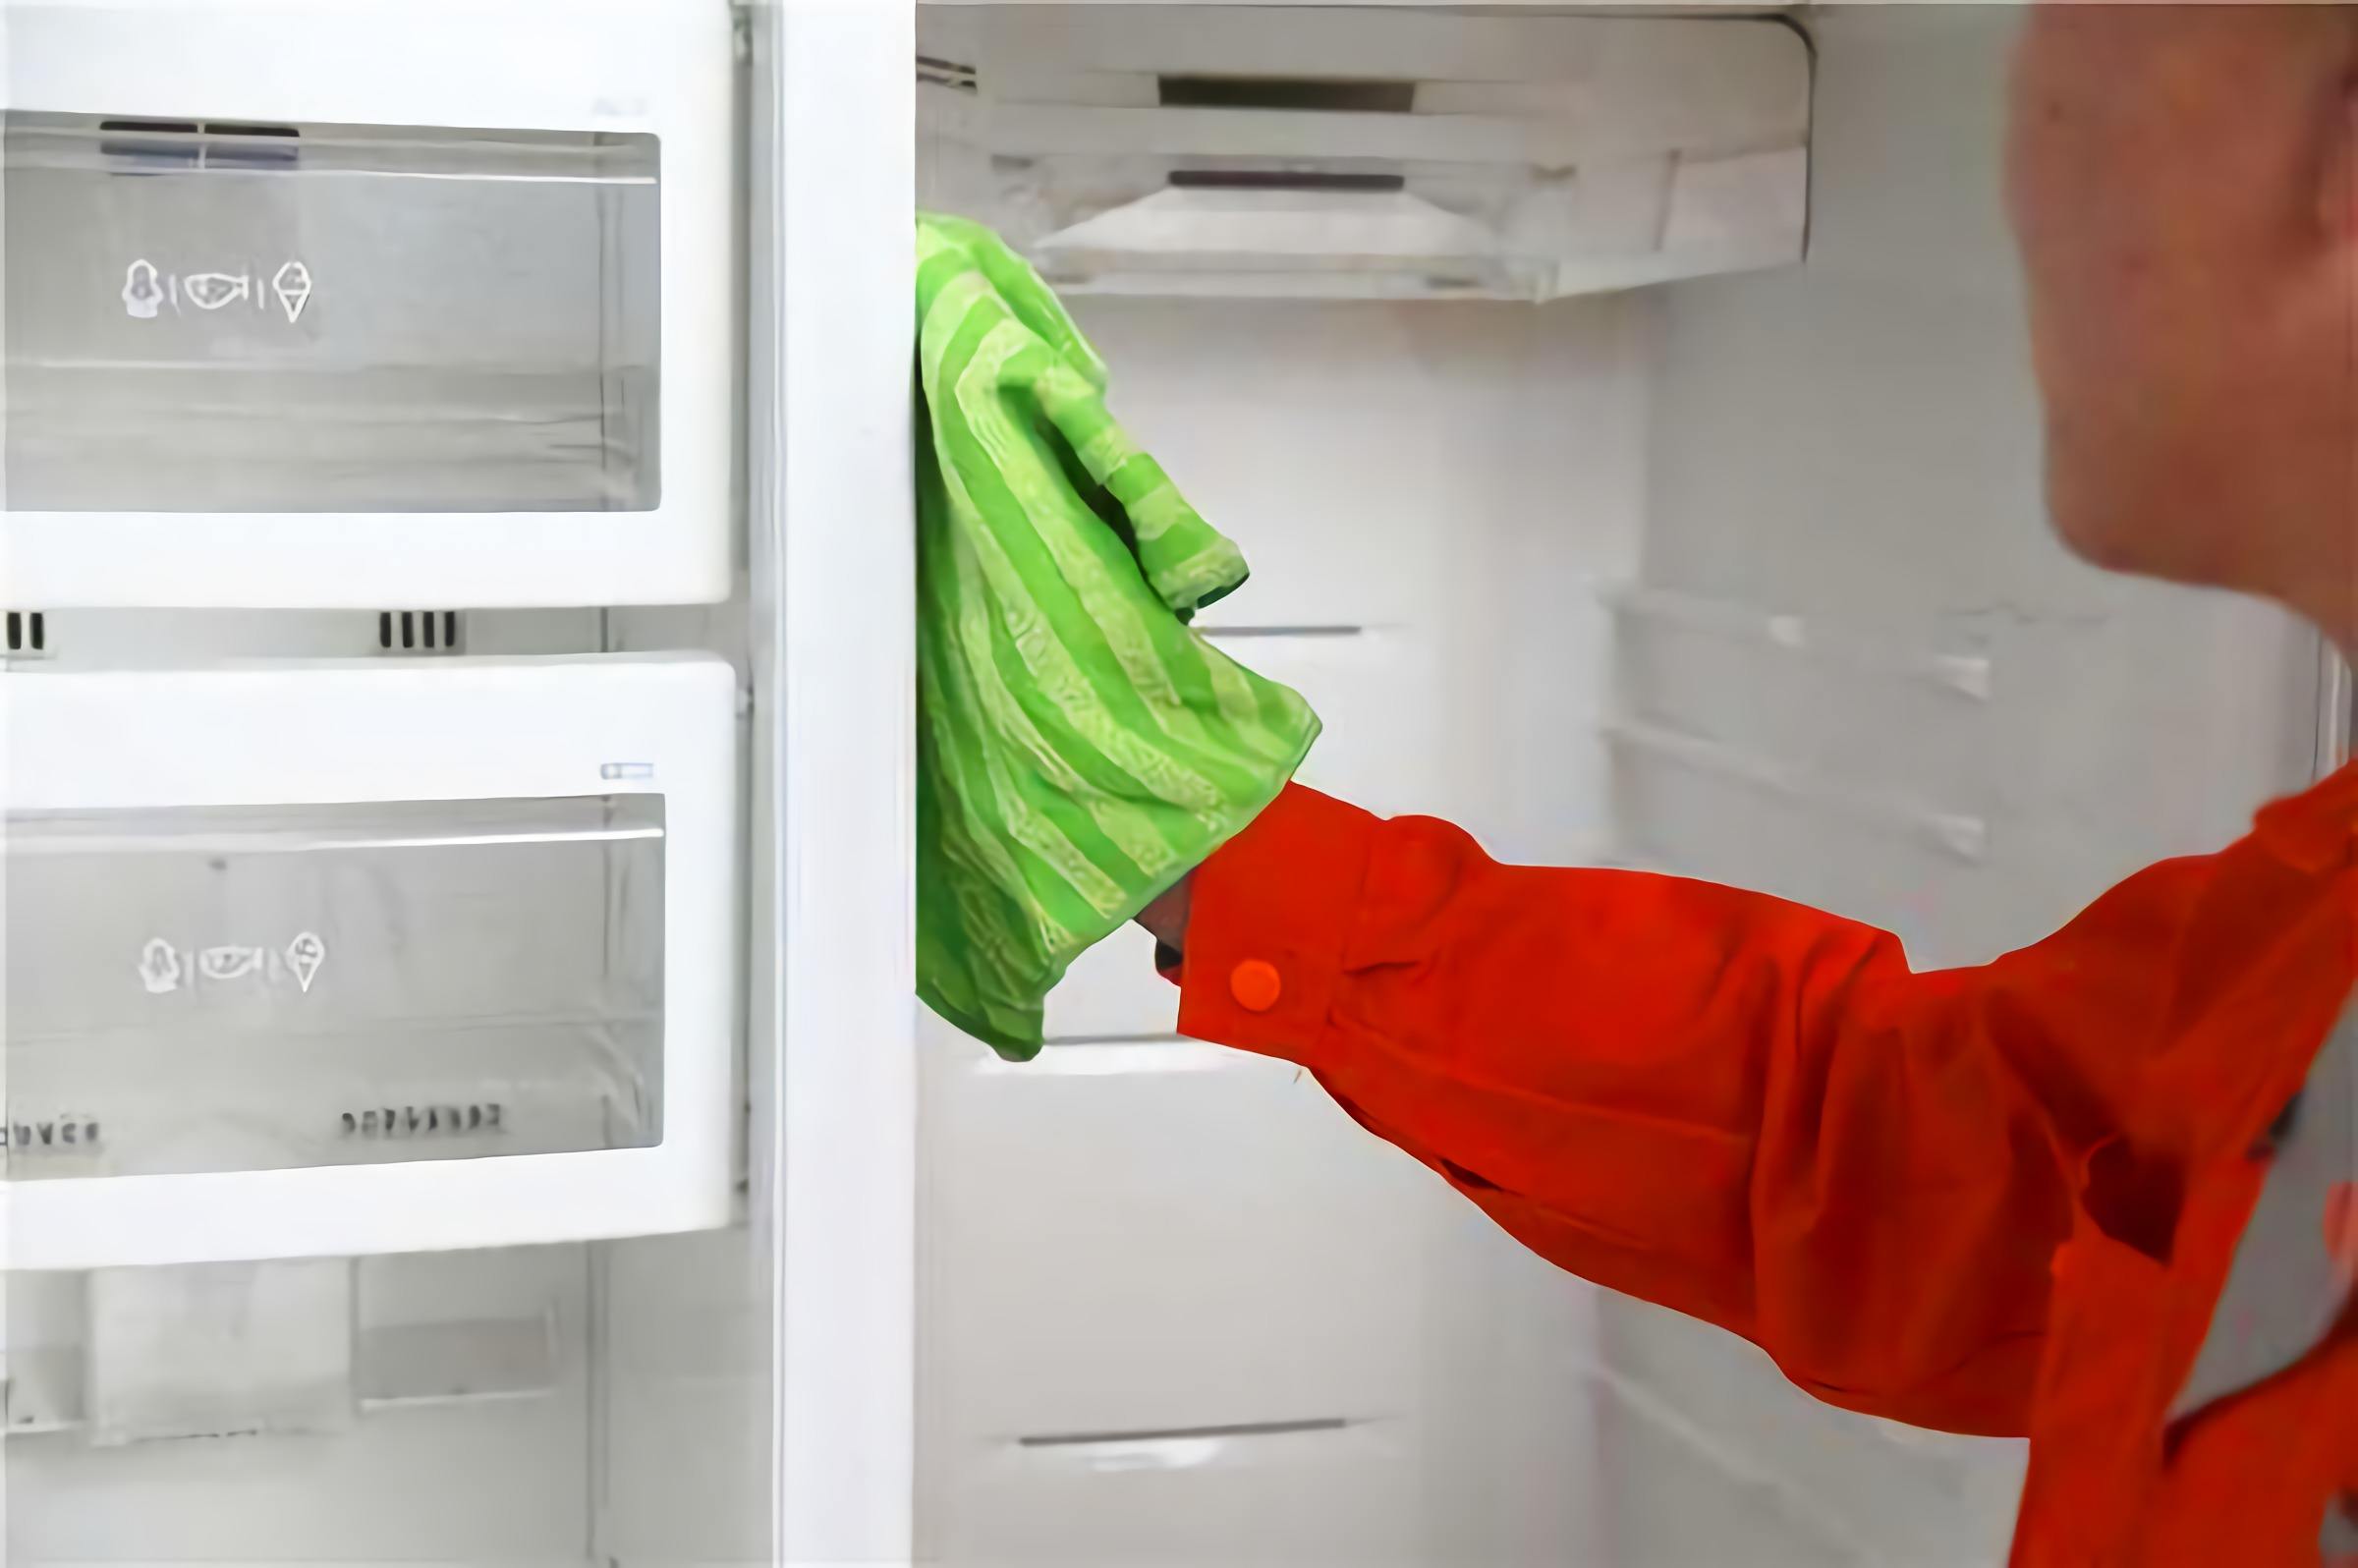 冰箱清洗消毒